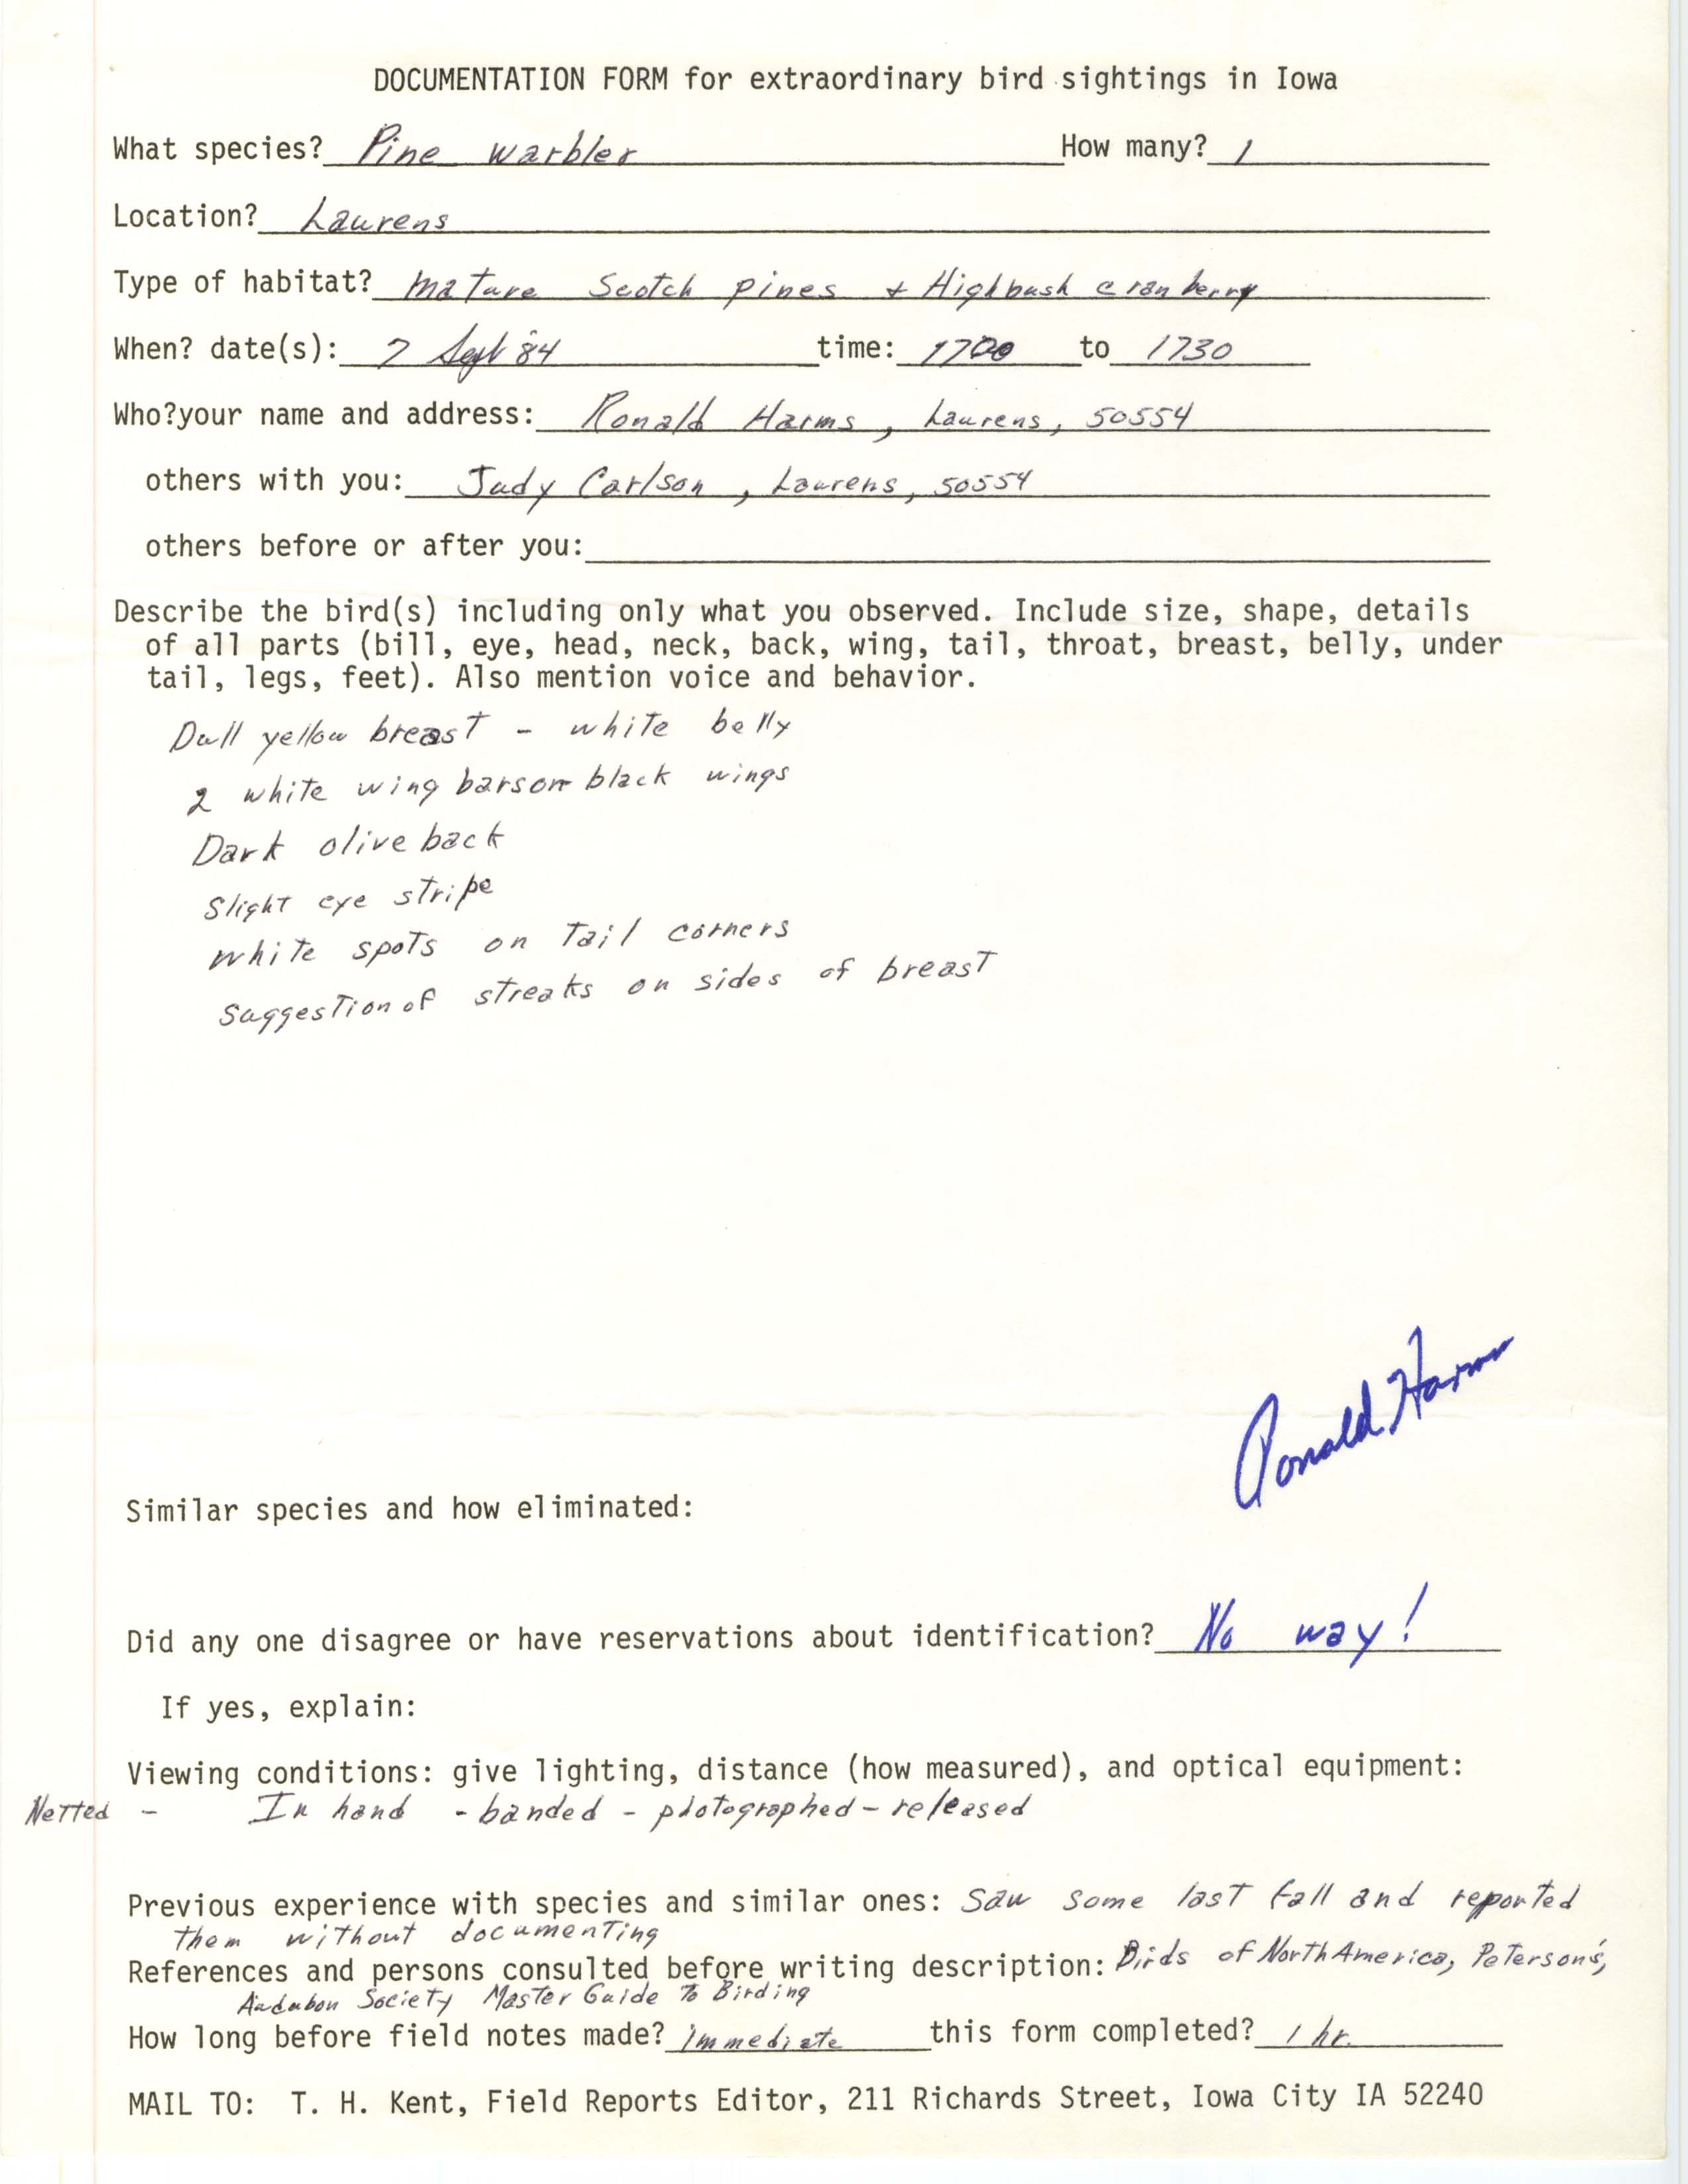 Rare bird documentation form for Pine Warbler at Laurens, 1984